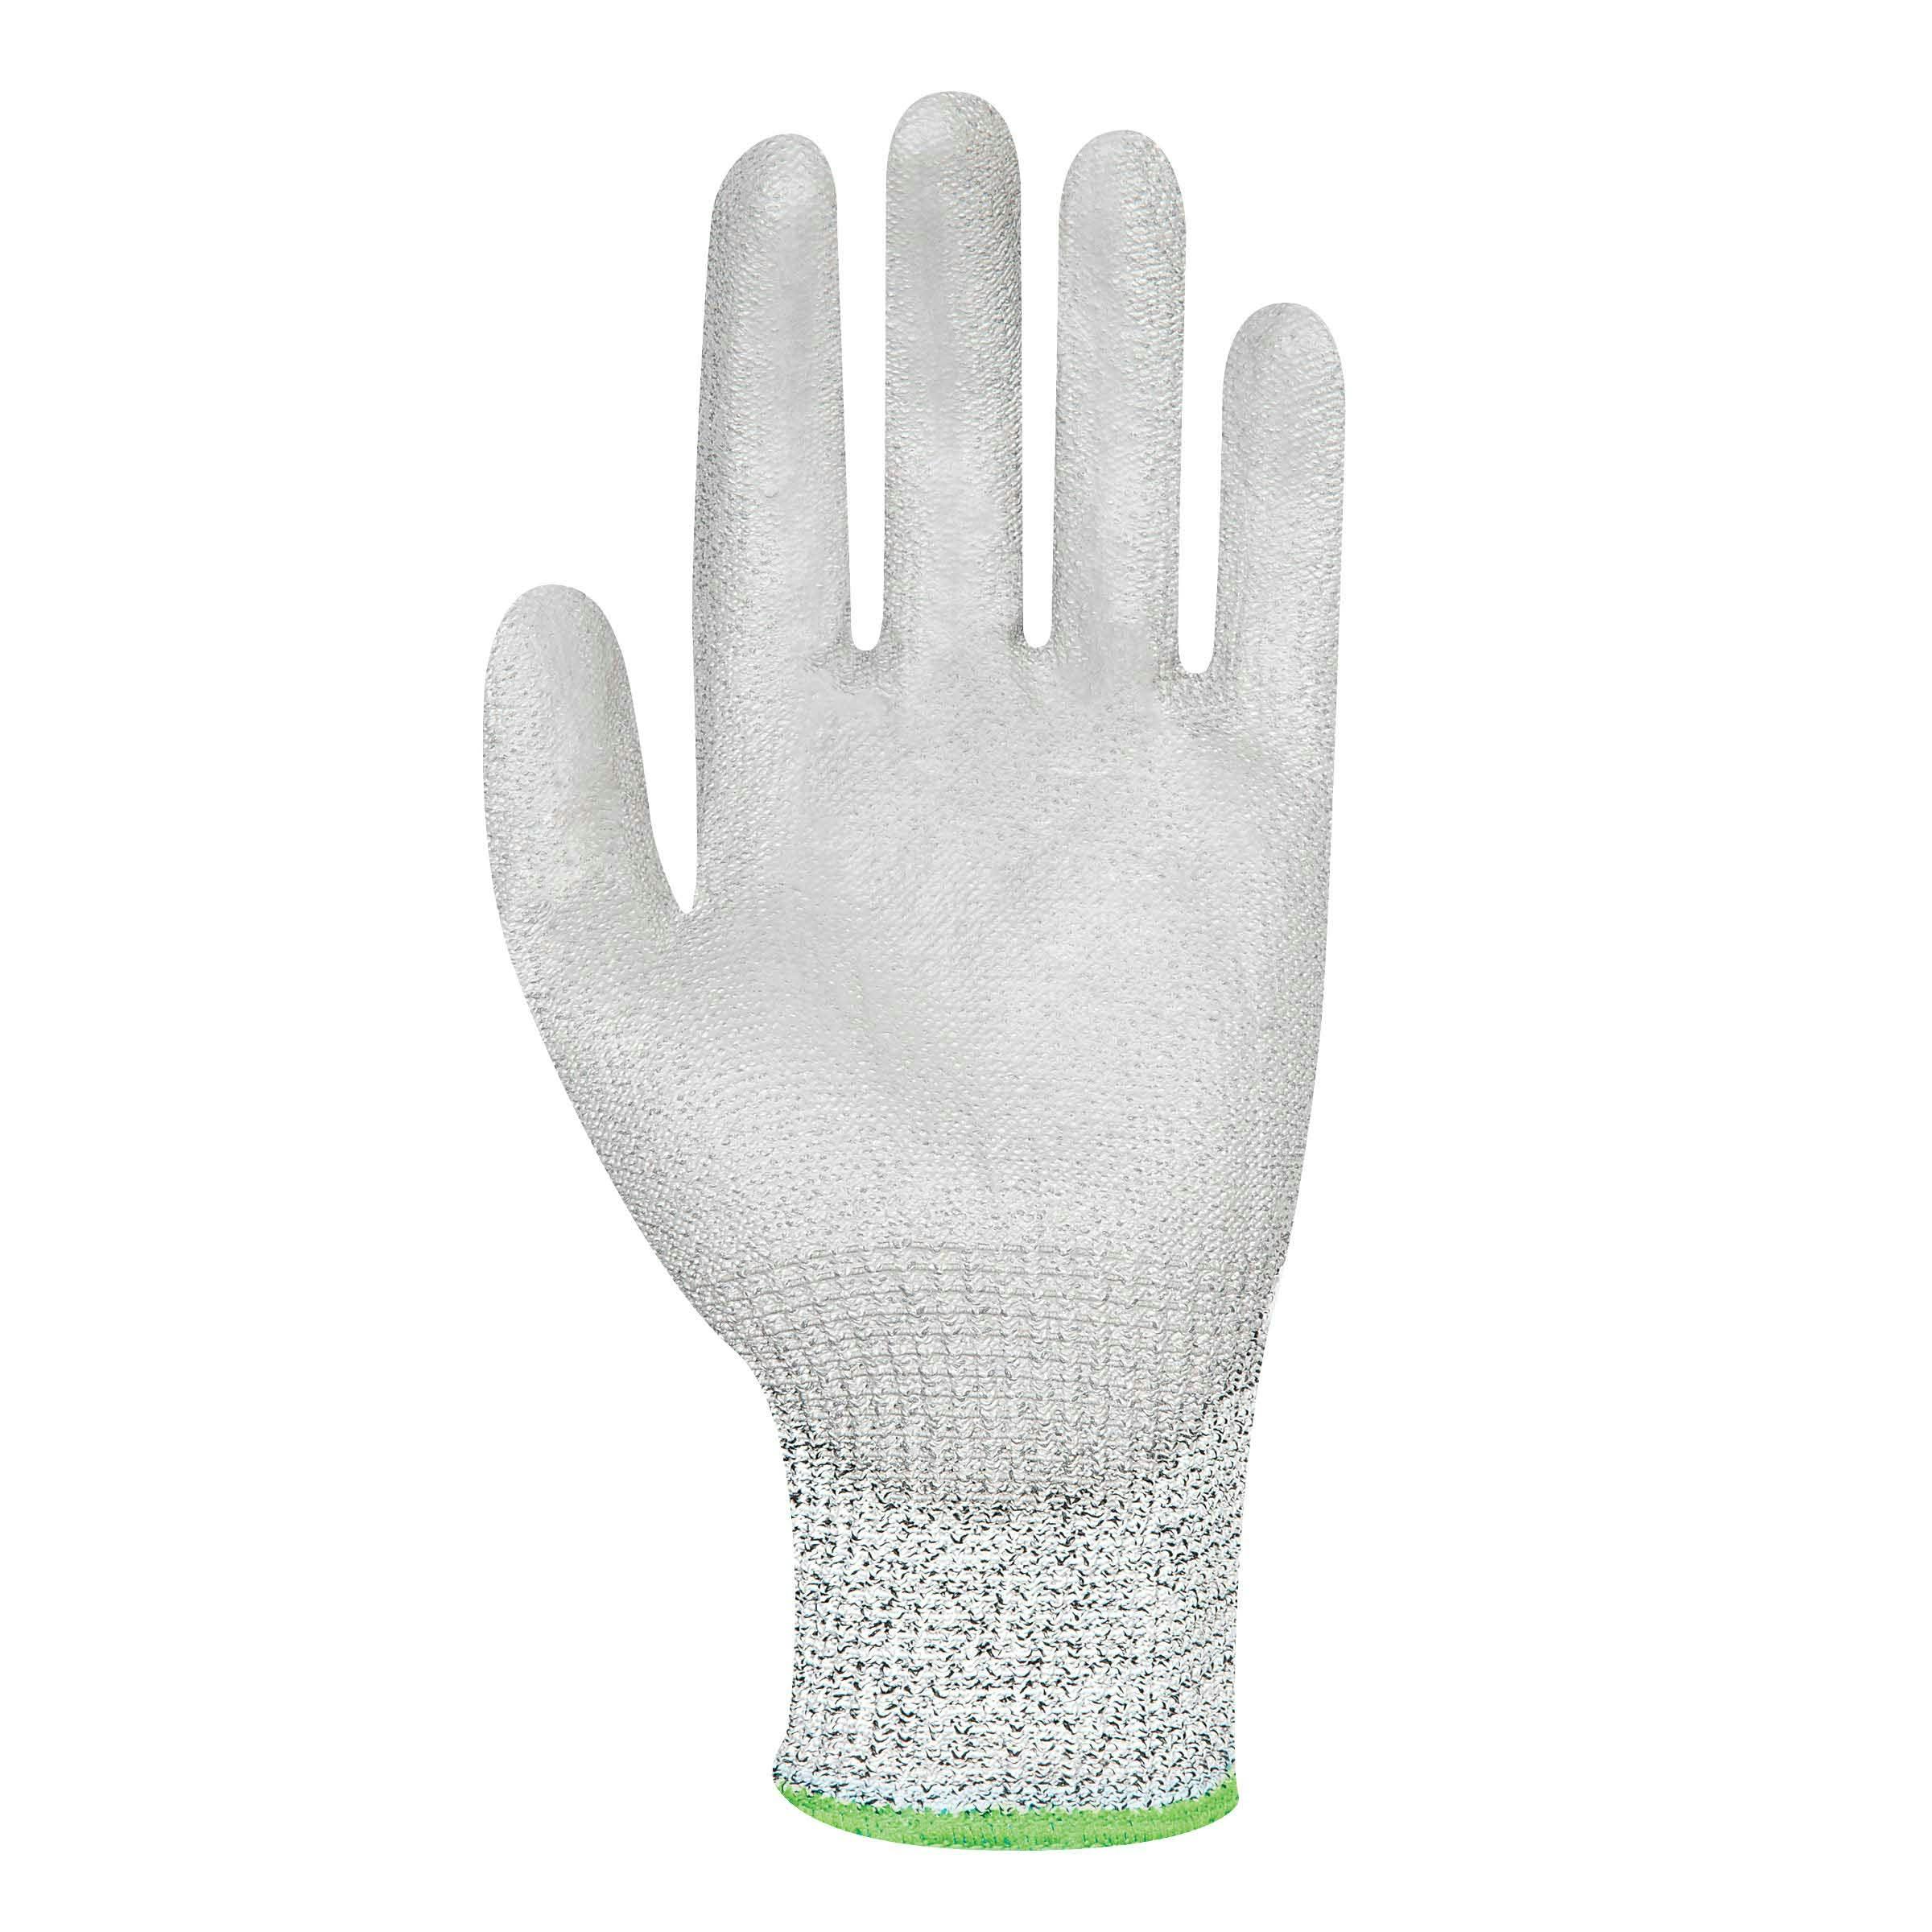 Force360 Titanium 5 Cut 5 PU Glove (Vend Pack) - Formally Gfpr201_2